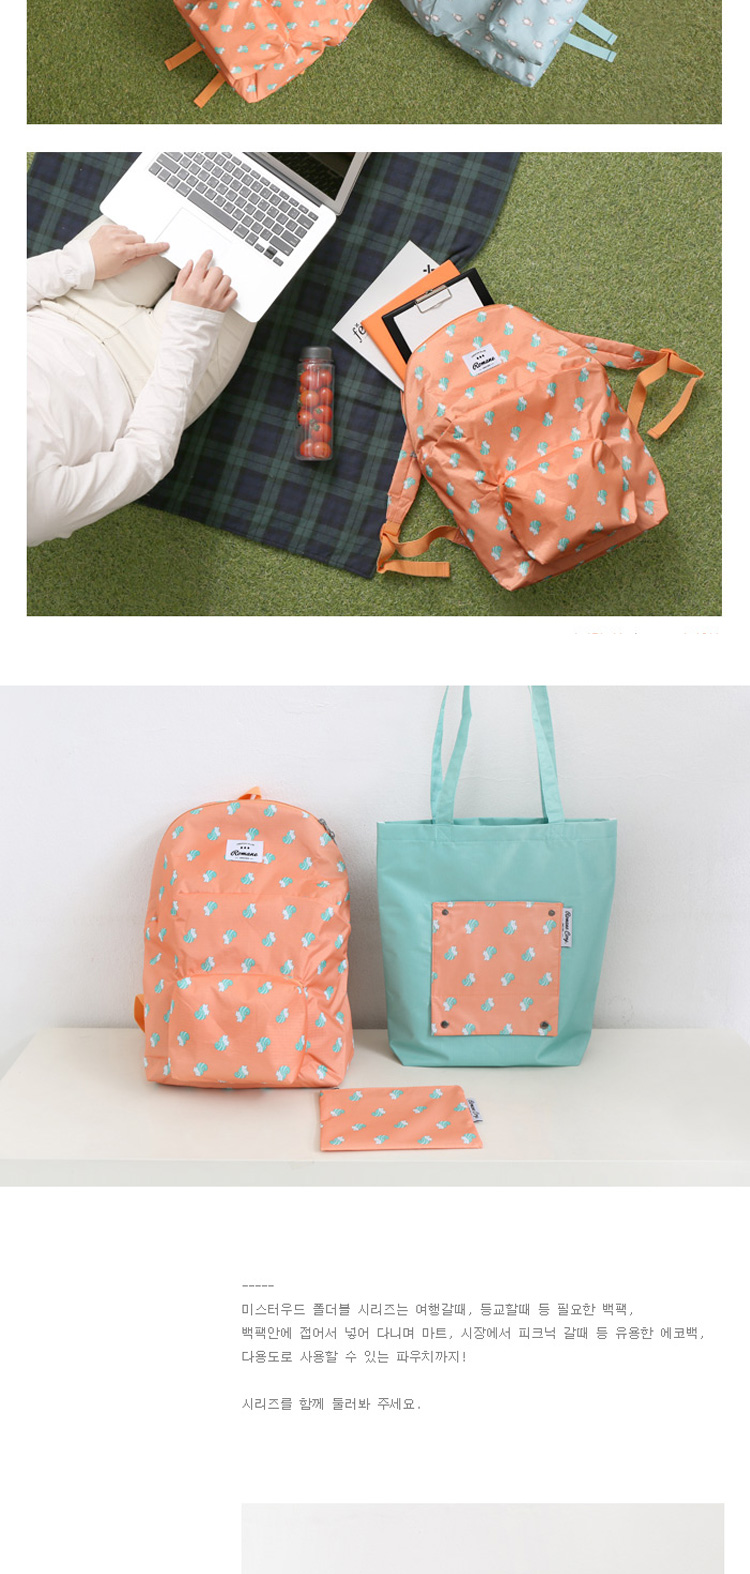 韩国卡通动物可爱折叠双肩包超轻便携户外旅游背包学生书包收纳袋4